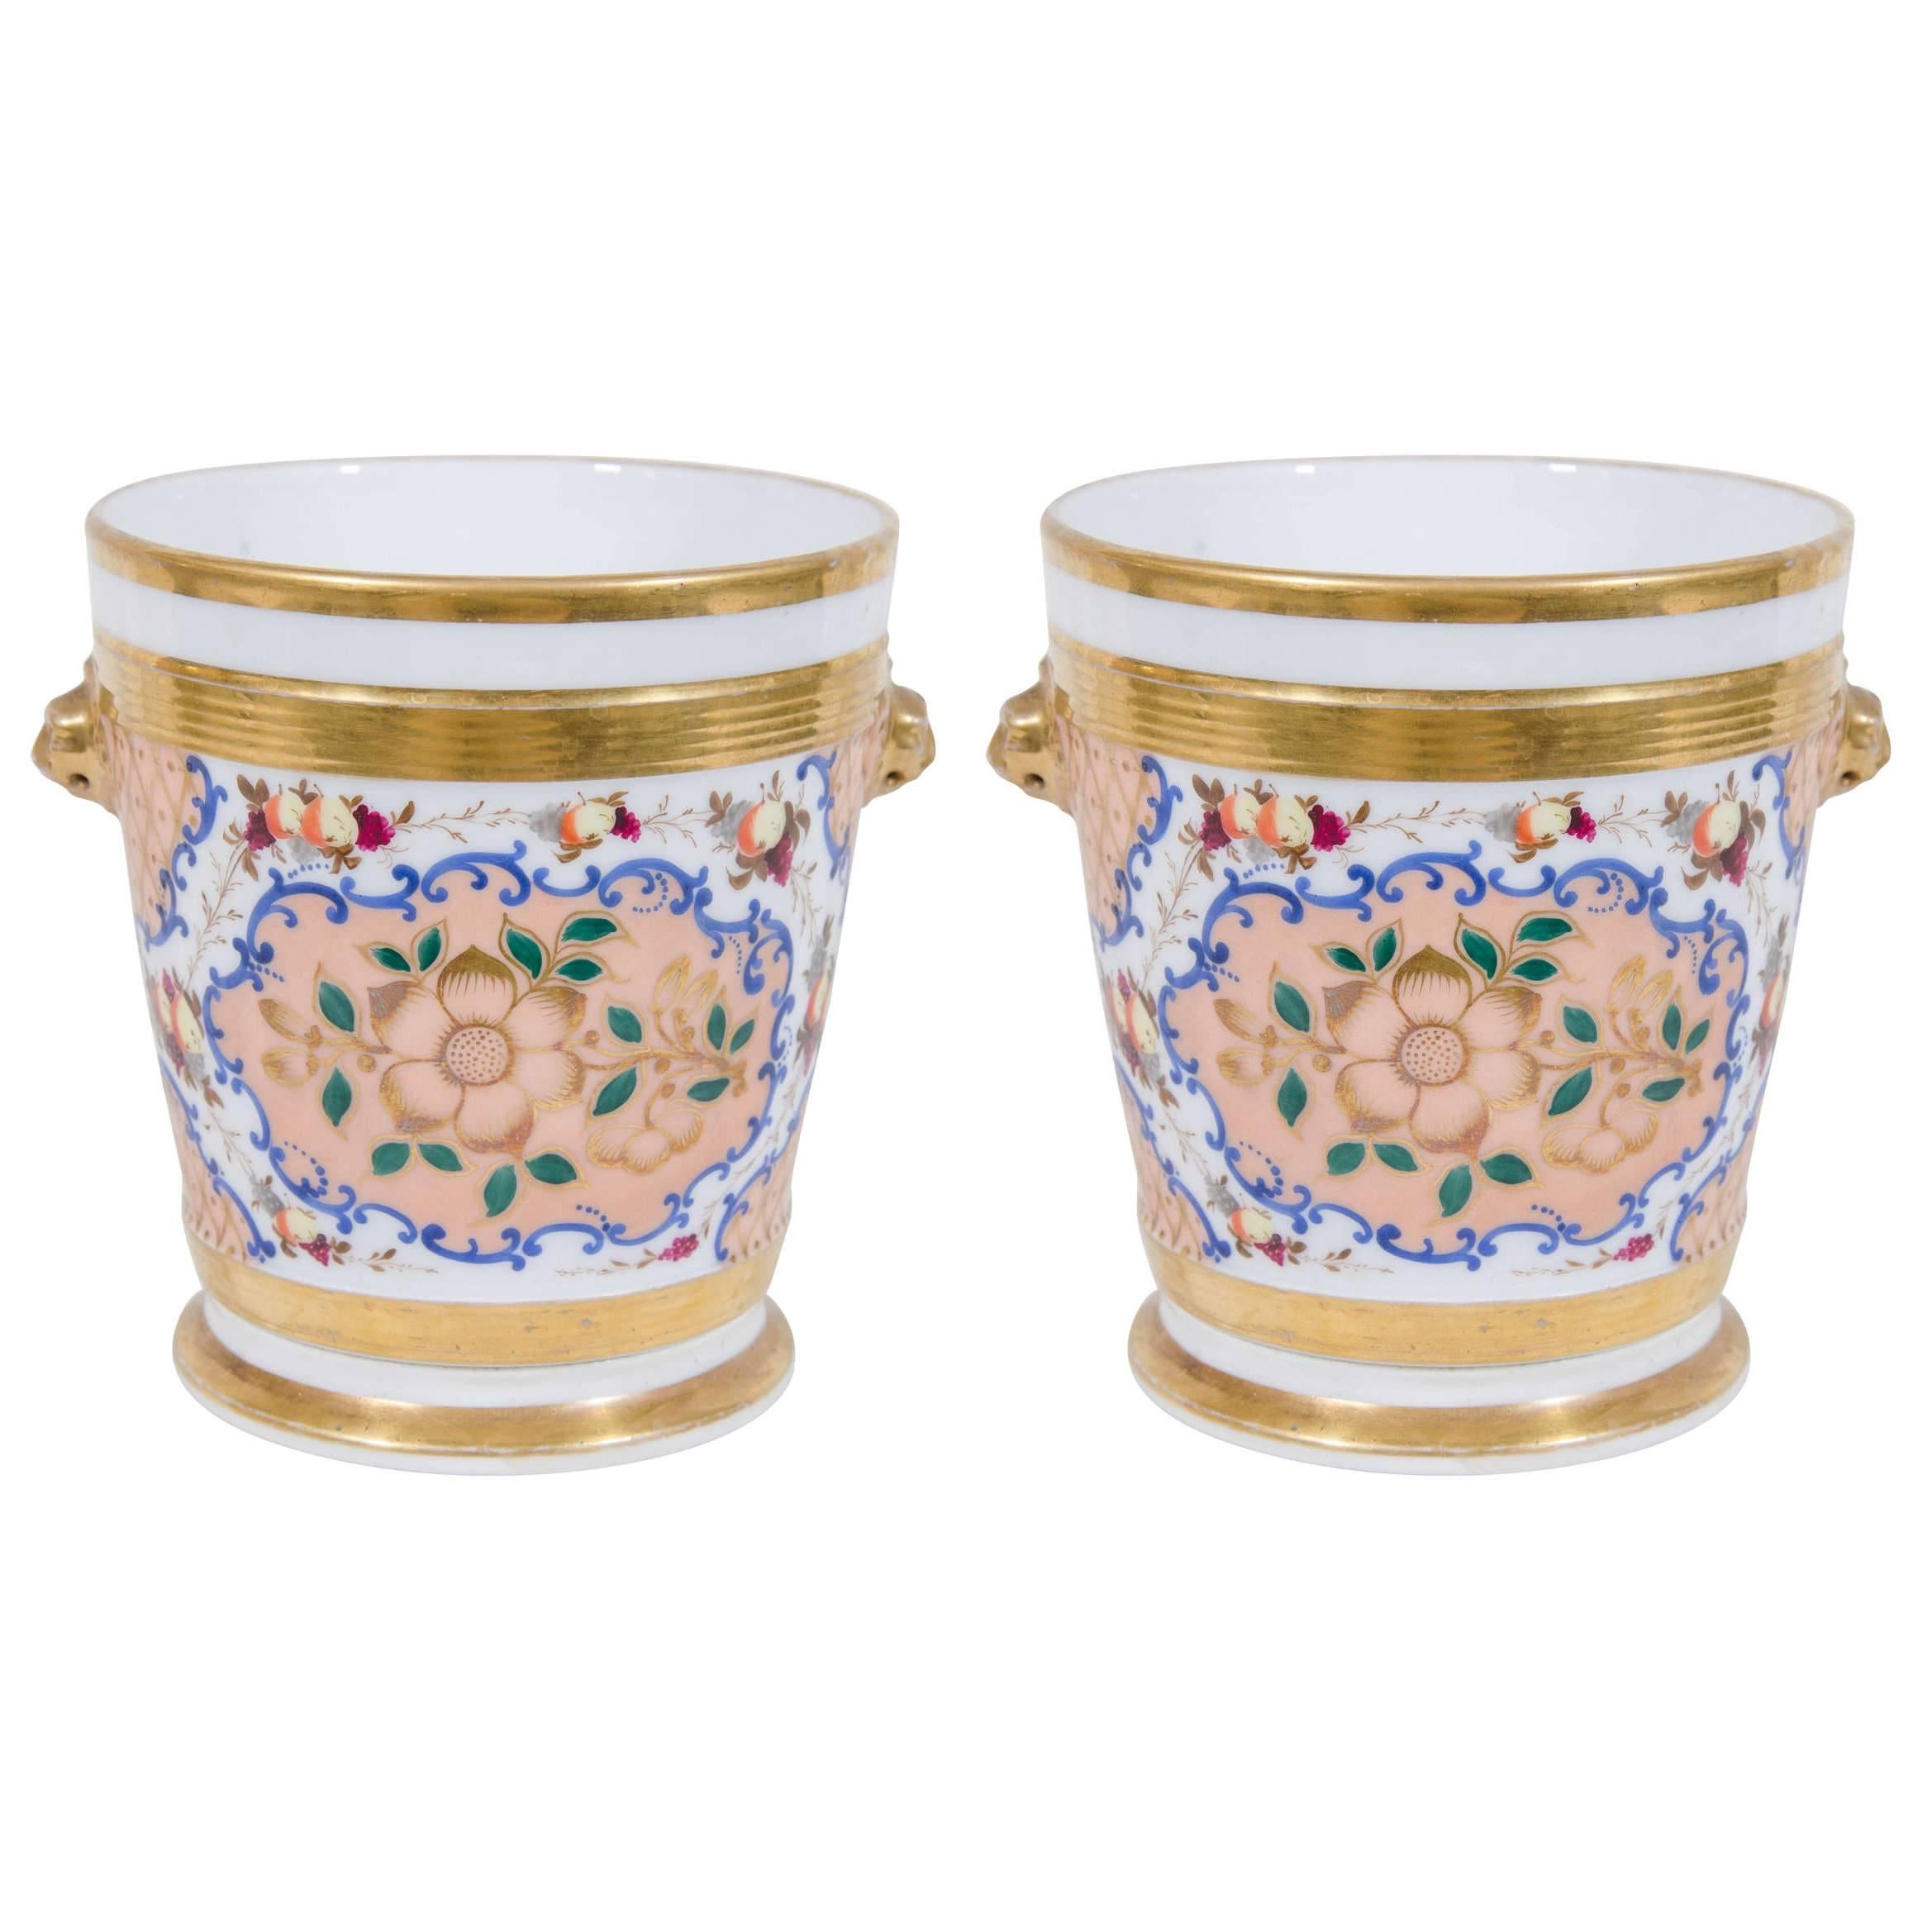 A Pair of Paris Porcelain Cache Pots